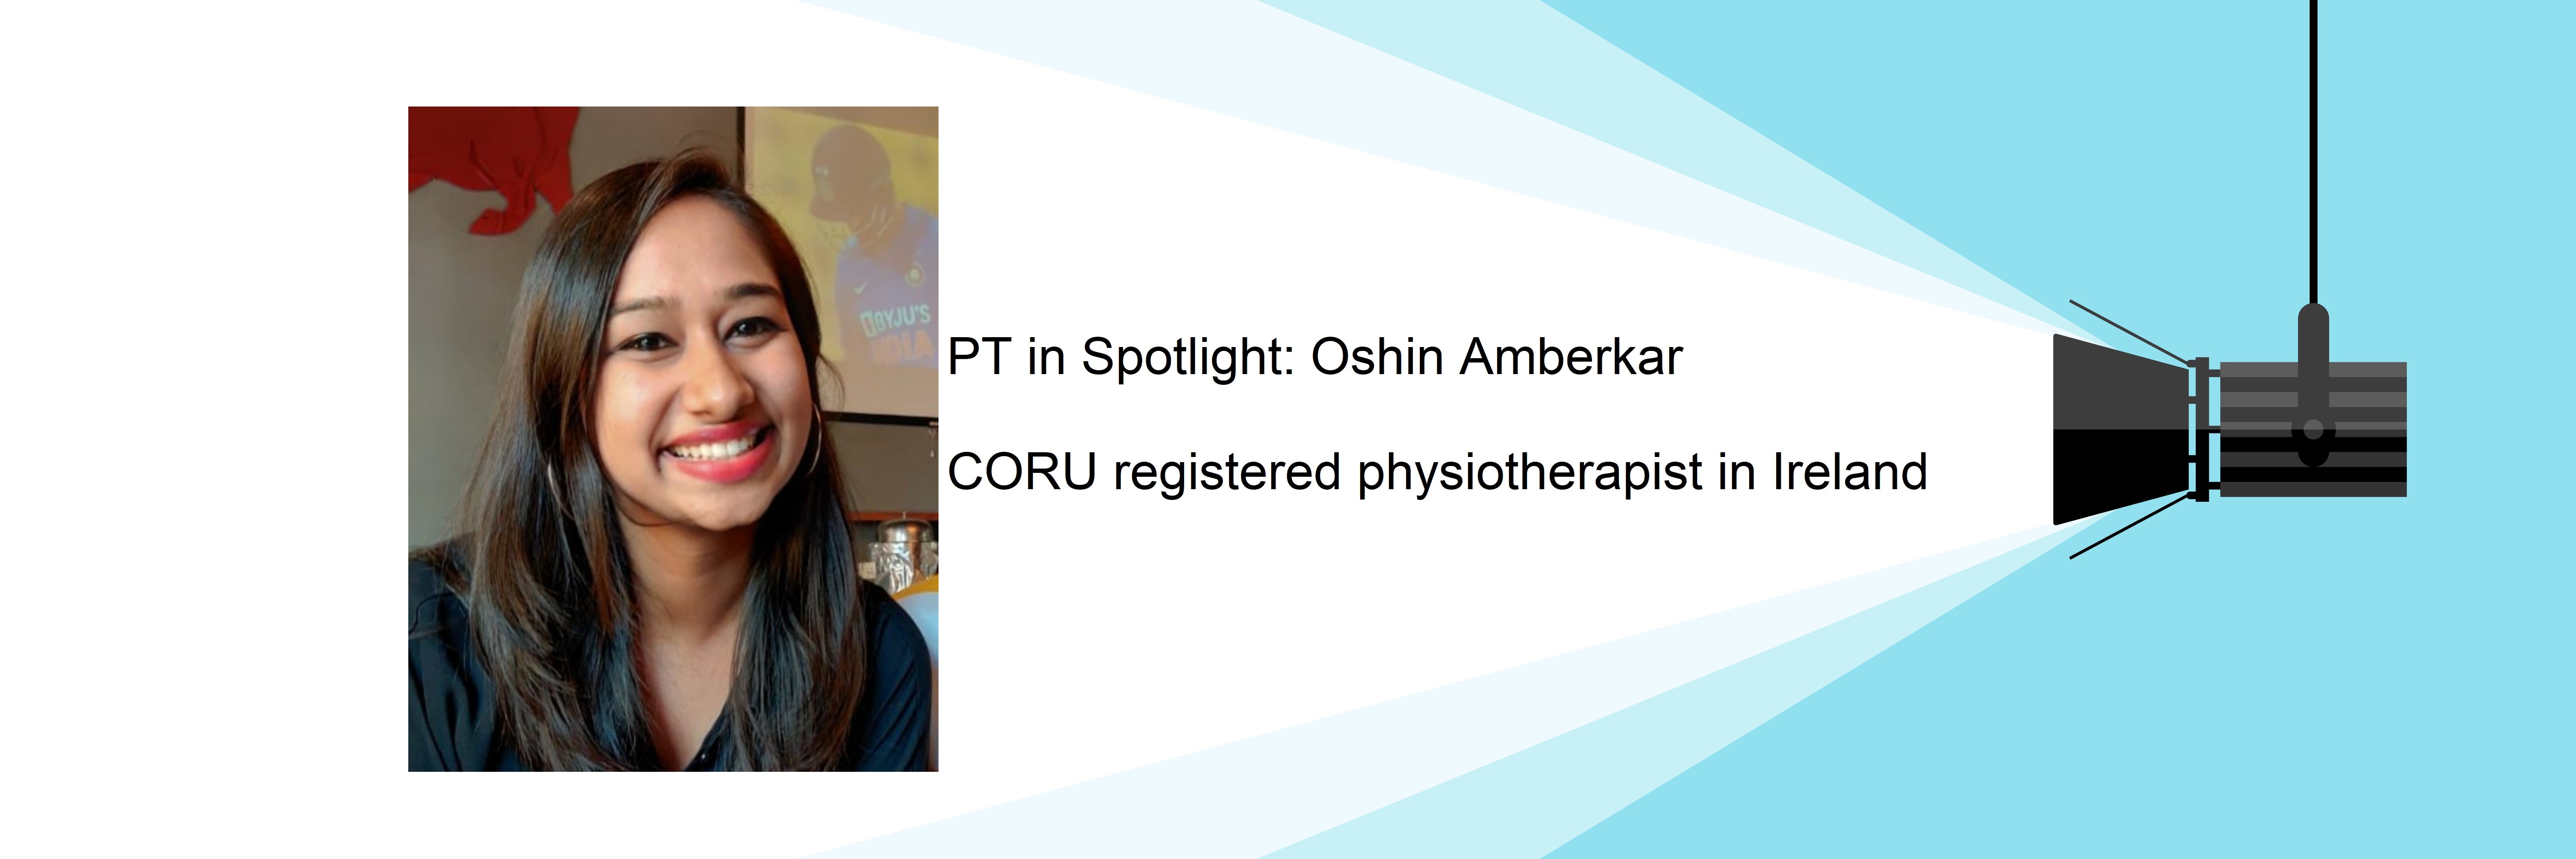 Indian Physiotherapist in Ireland, Oshin Amberkar